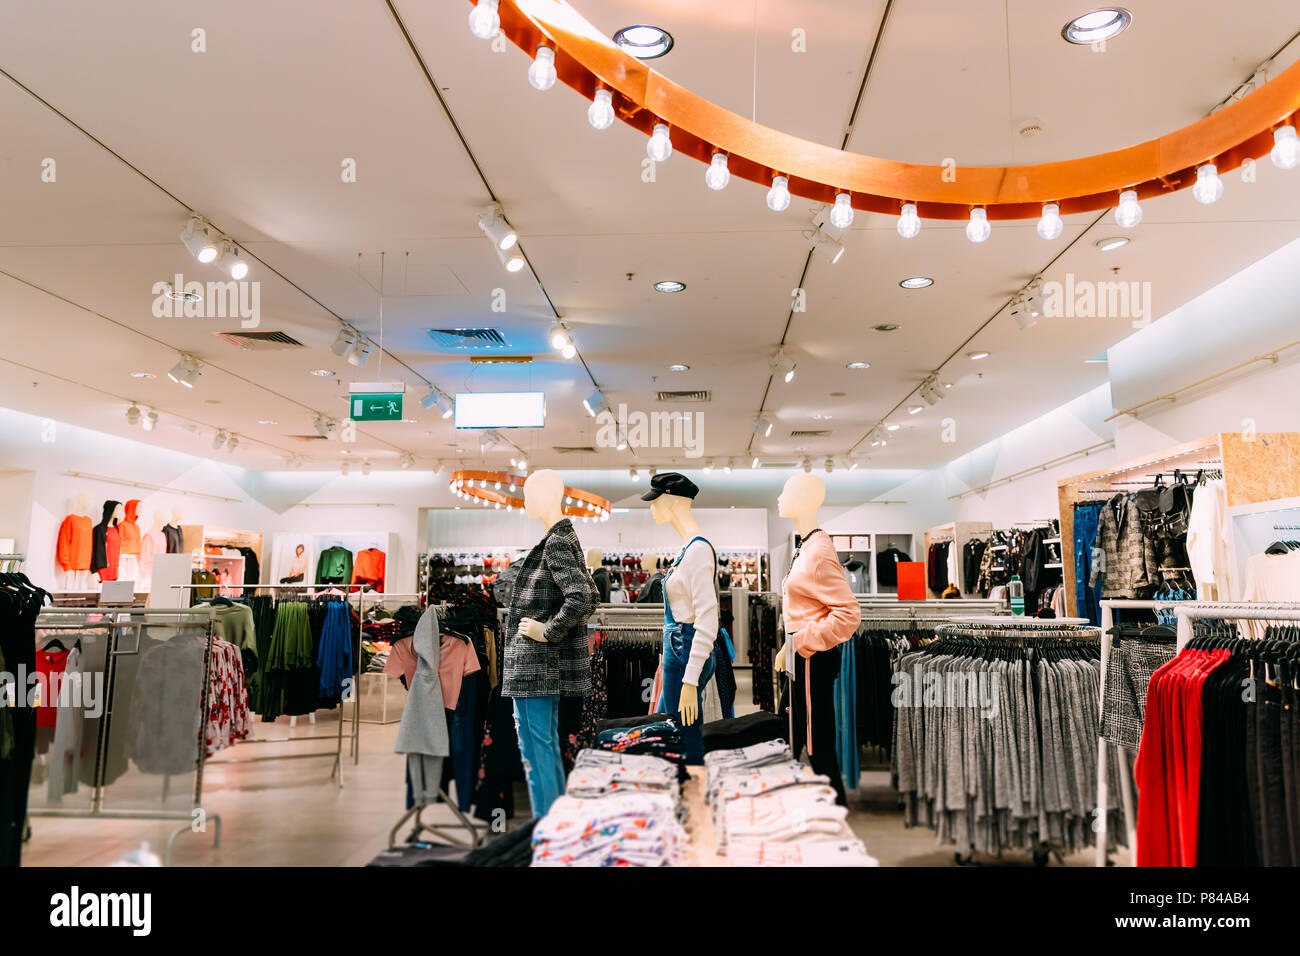 Gekleidet in Schaufensterpuppen weiblich Frau legere Kleidung und Kleidung in den Regalen und Kleiderbügel im Store im Einkaufszentrum. Stockfoto